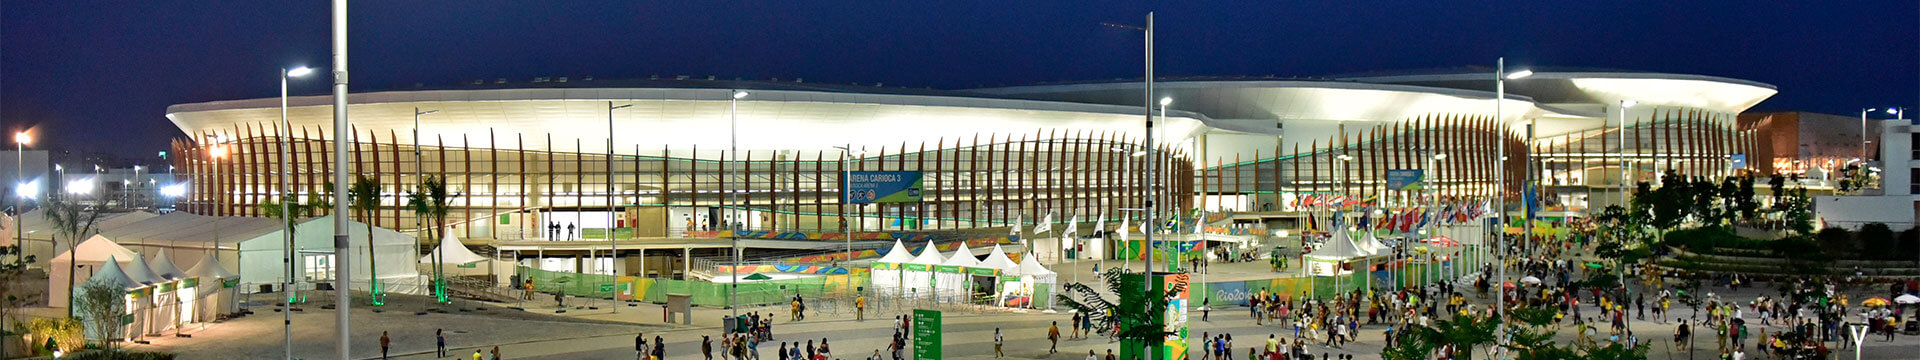 Paralympics Rio 2016